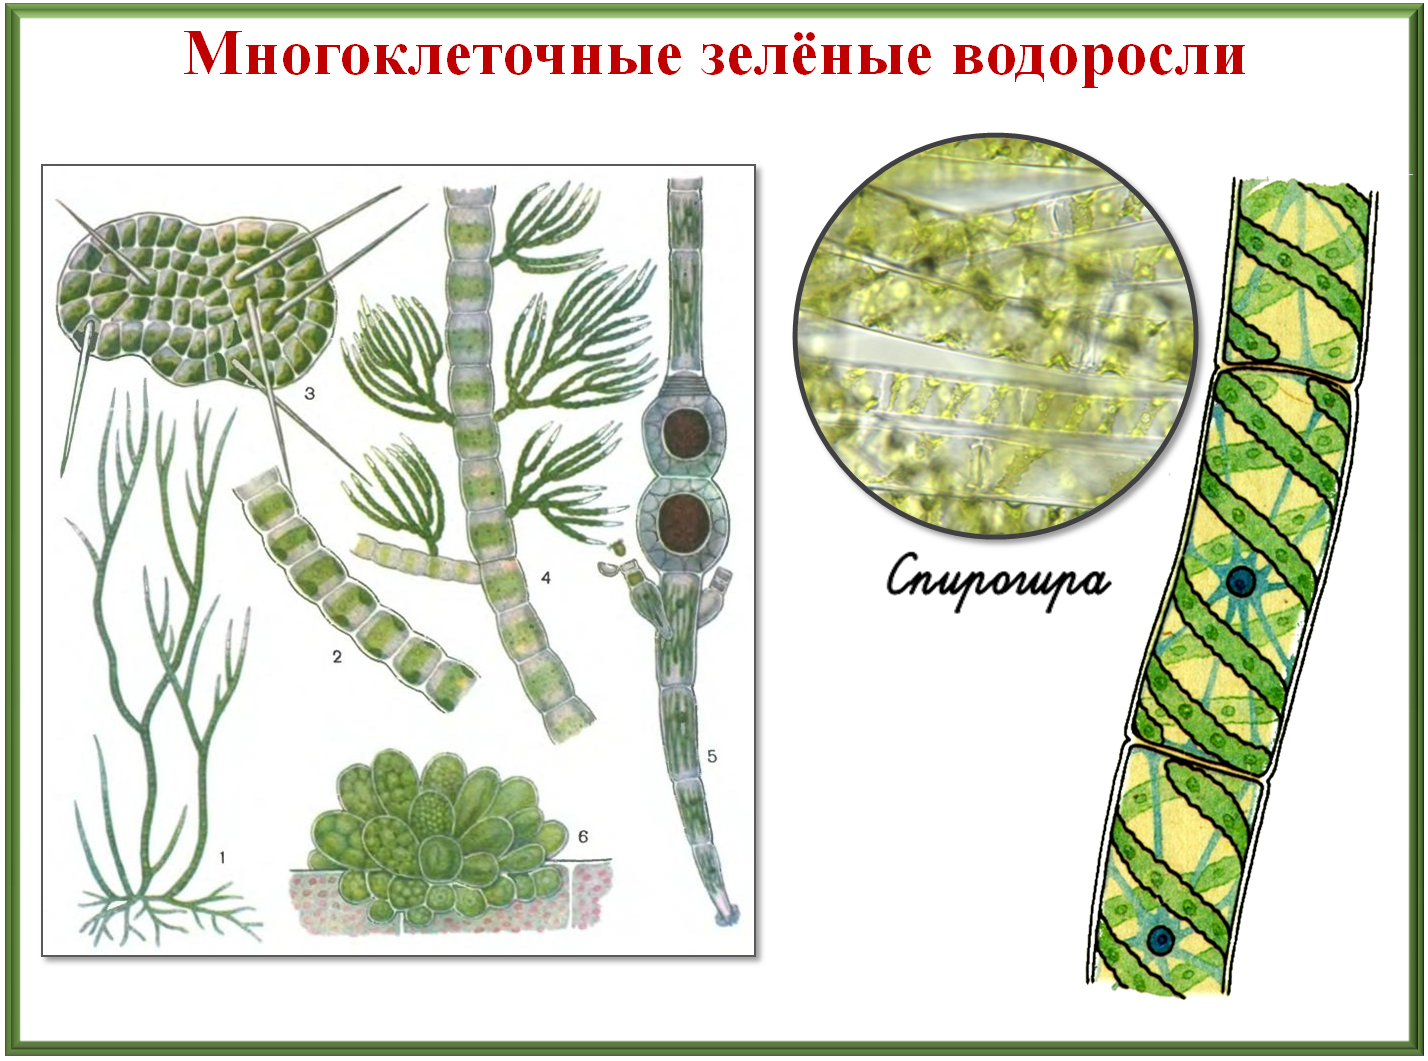 Обозначение водорослей. Строение водорослей. Многоклеточные зеленые водоросли. Разнообразие зеленых водорослей. Многообразие и размножение водорослей.